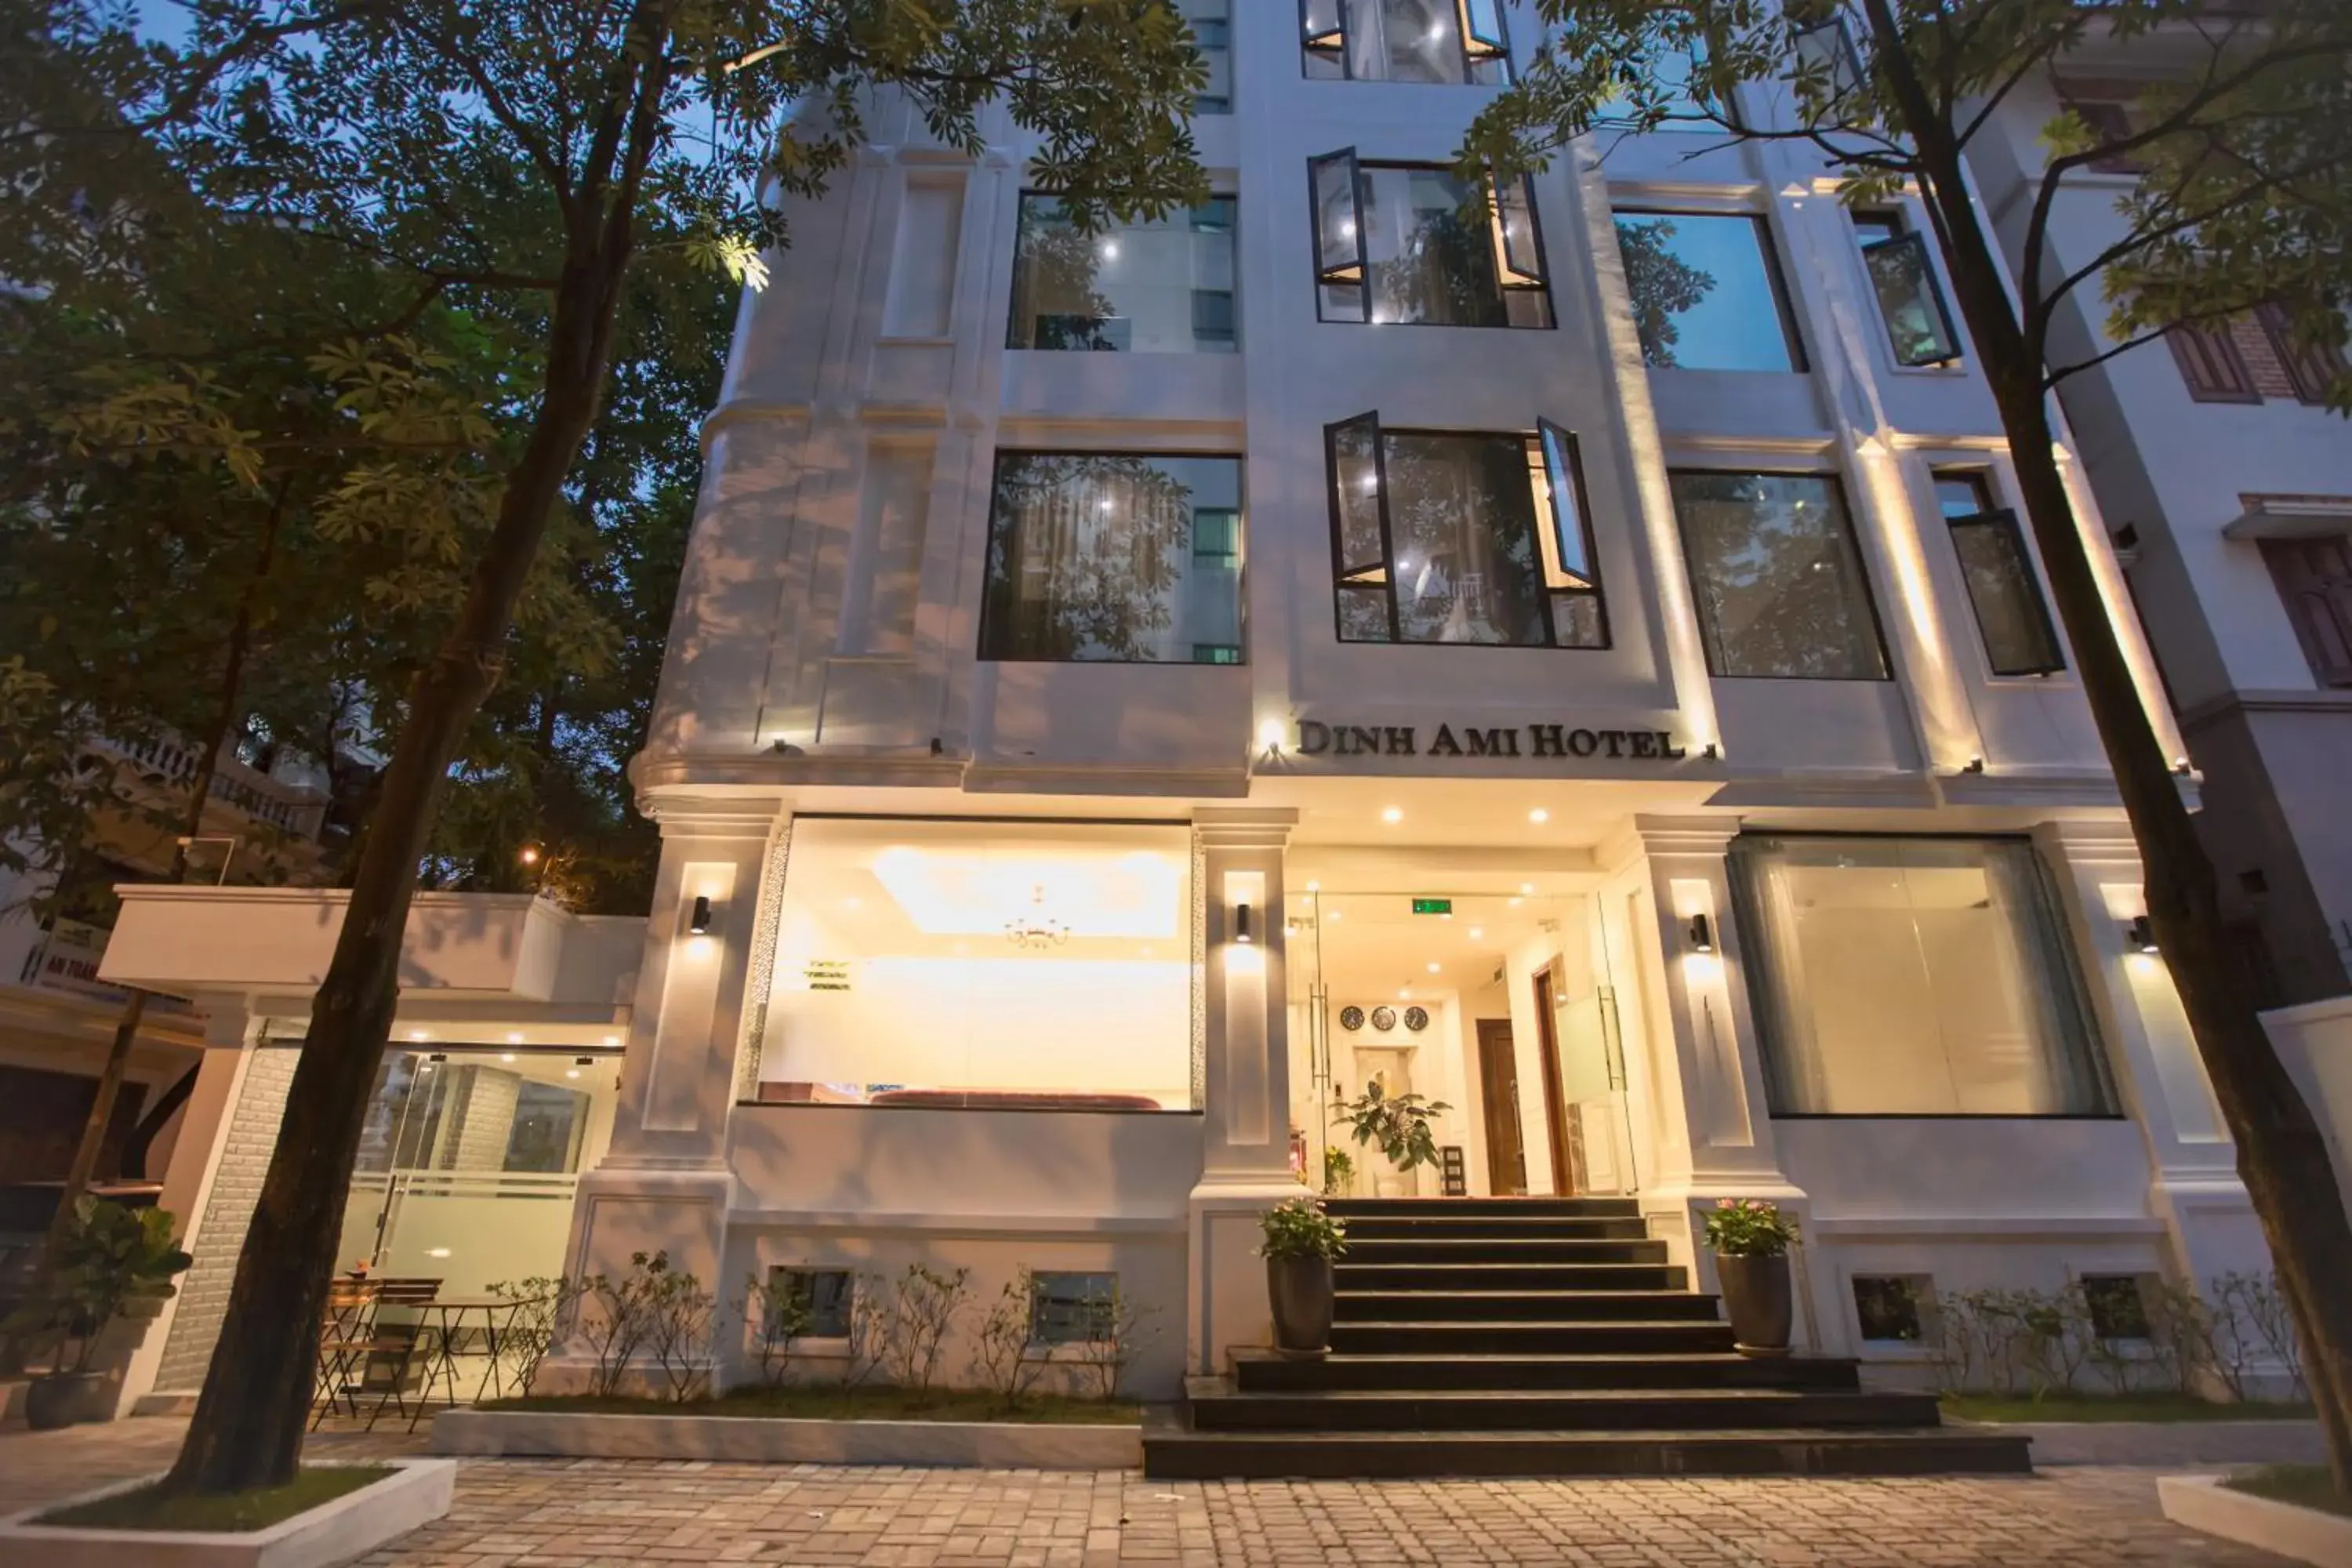 Facade/entrance, Property Building in Dinh Ami Hanoi Hotel